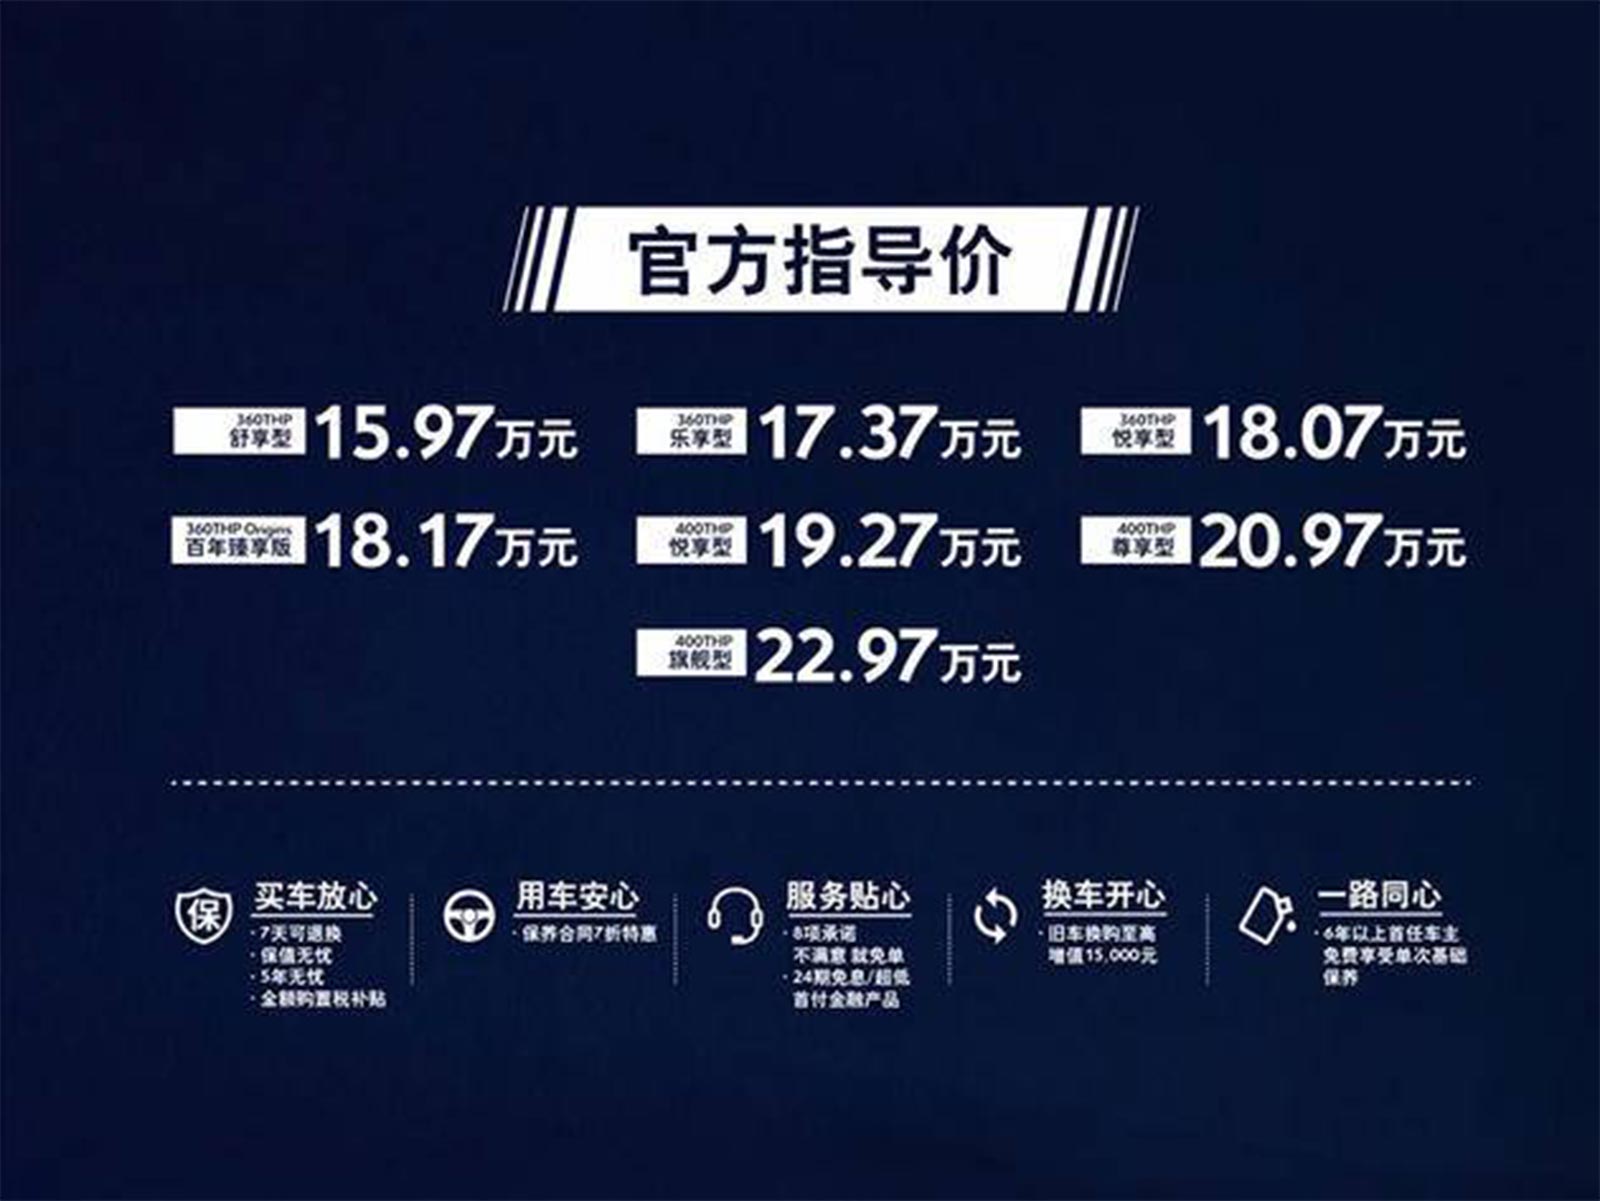 2021款东风雪铁龙天逸上市 售15.97-22.97万